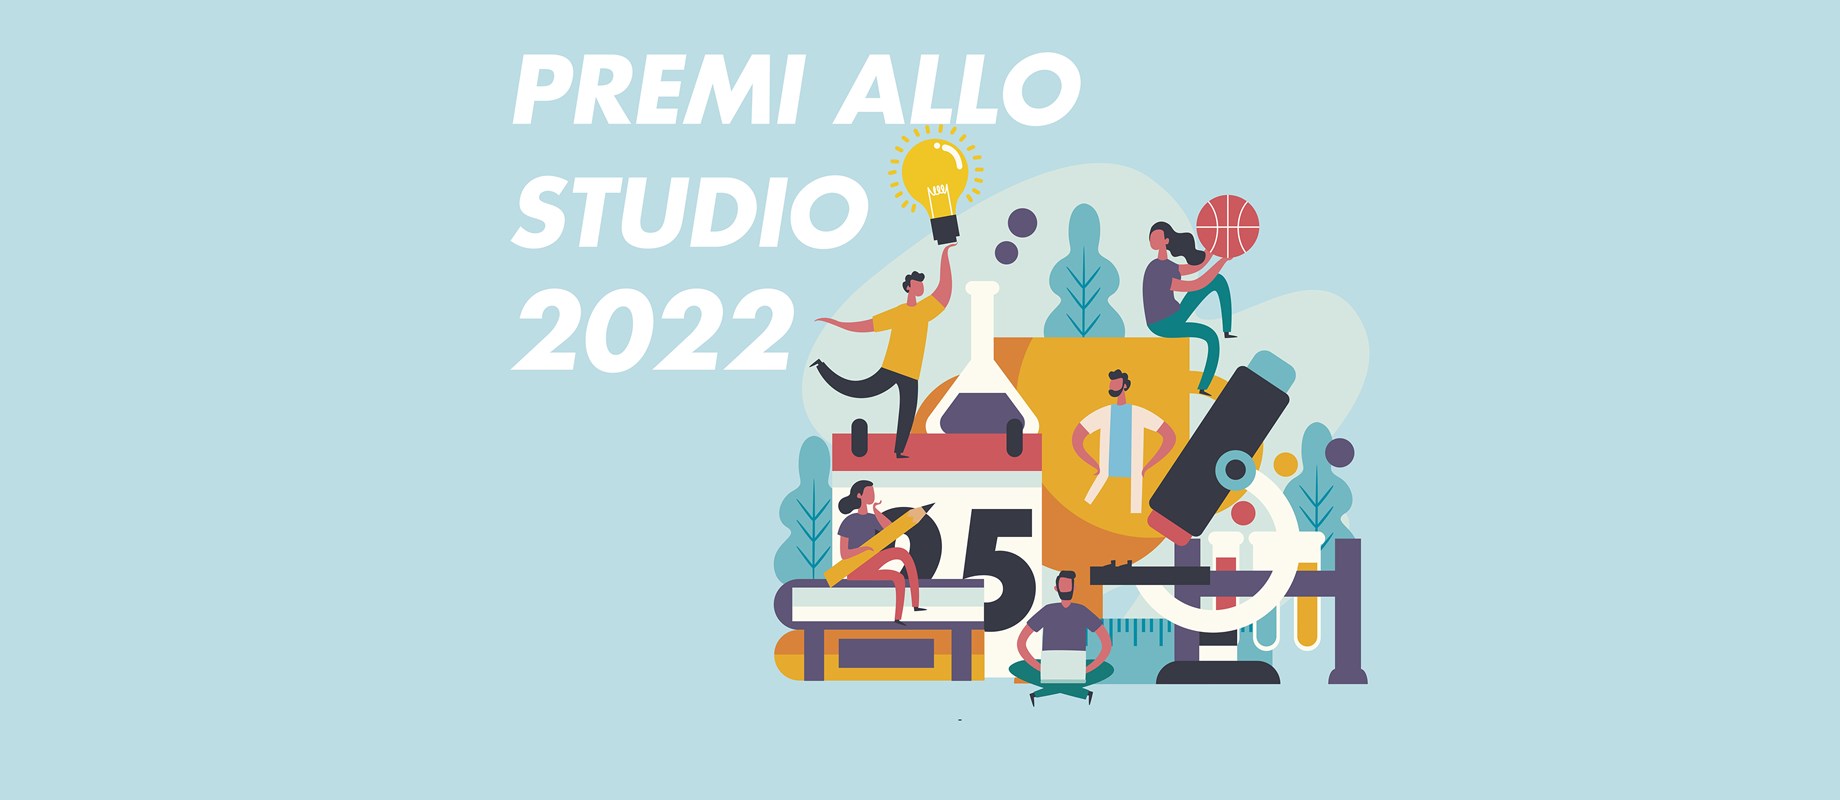 Premi allo Studio 2022 